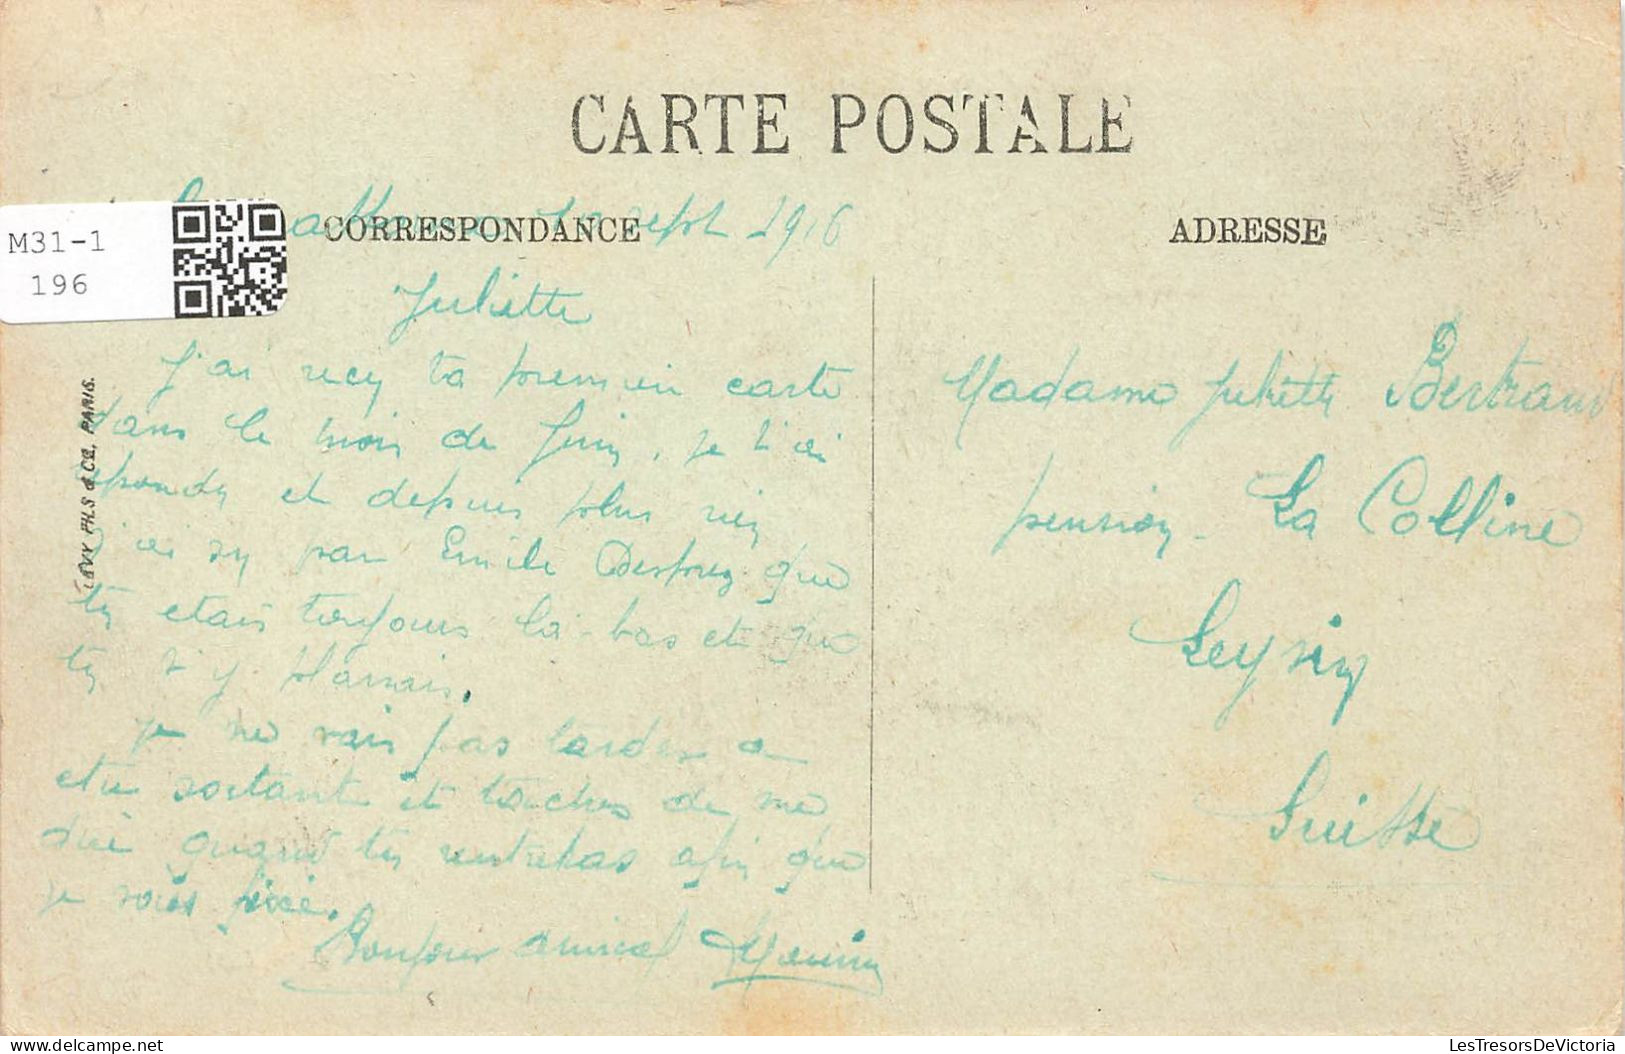 FRANCE - Carcassonne - Vue Générale De L'école Normale Des Jeunes Filles - Carte Postale Ancienne - Carcassonne